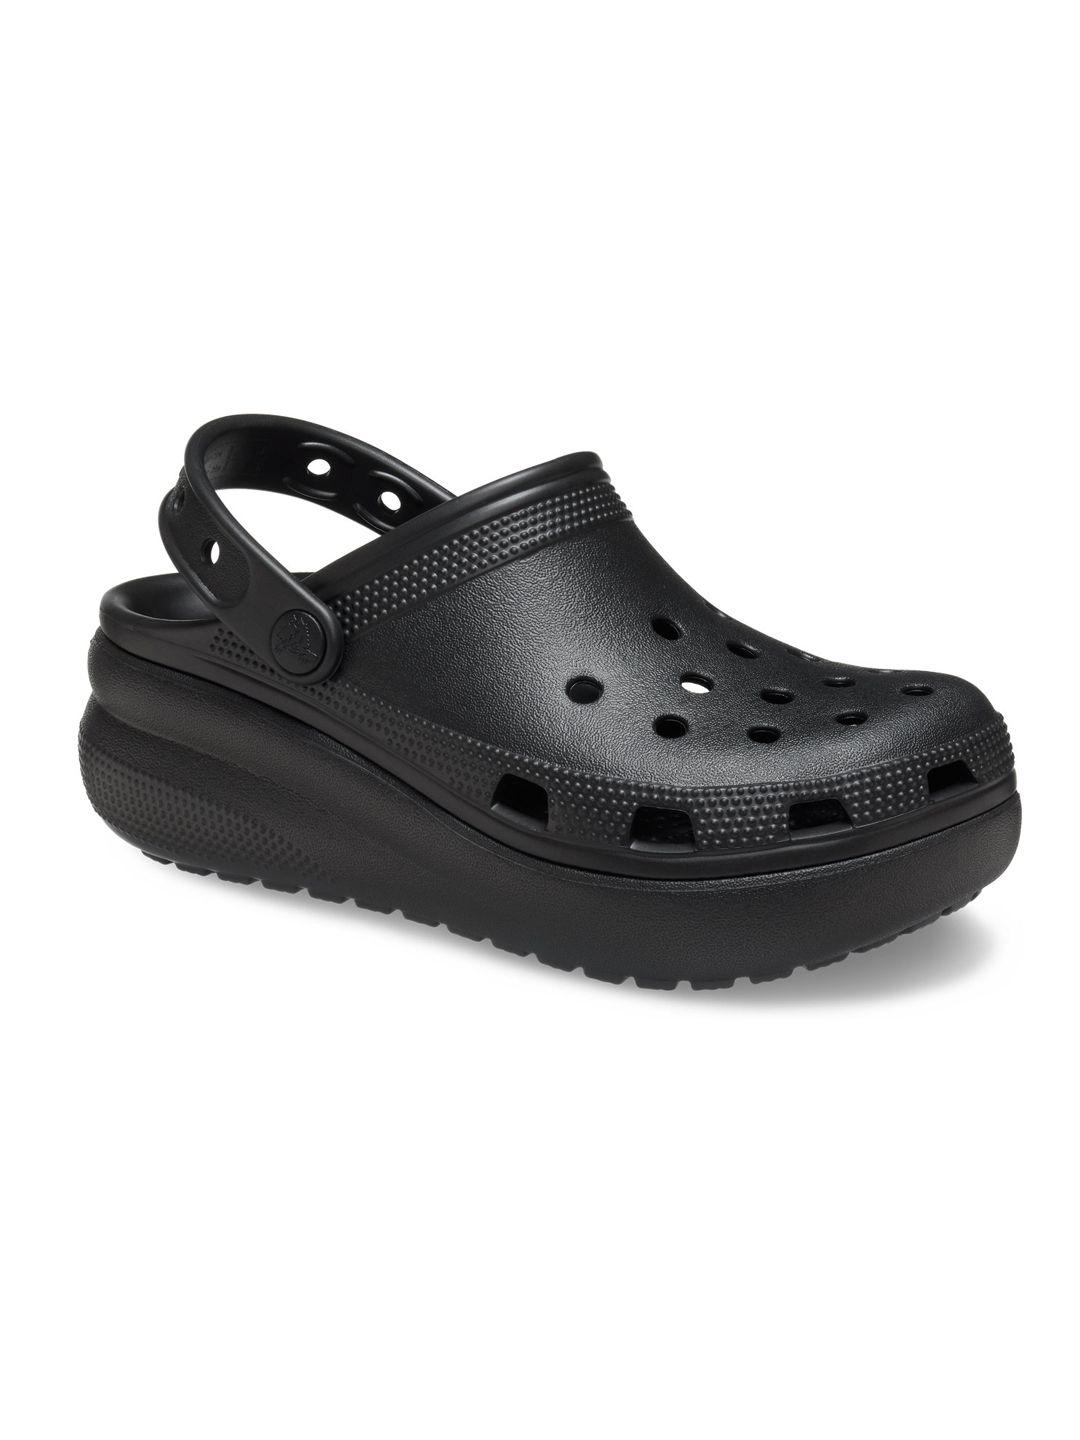 crocs unisex kids black clogs sandals